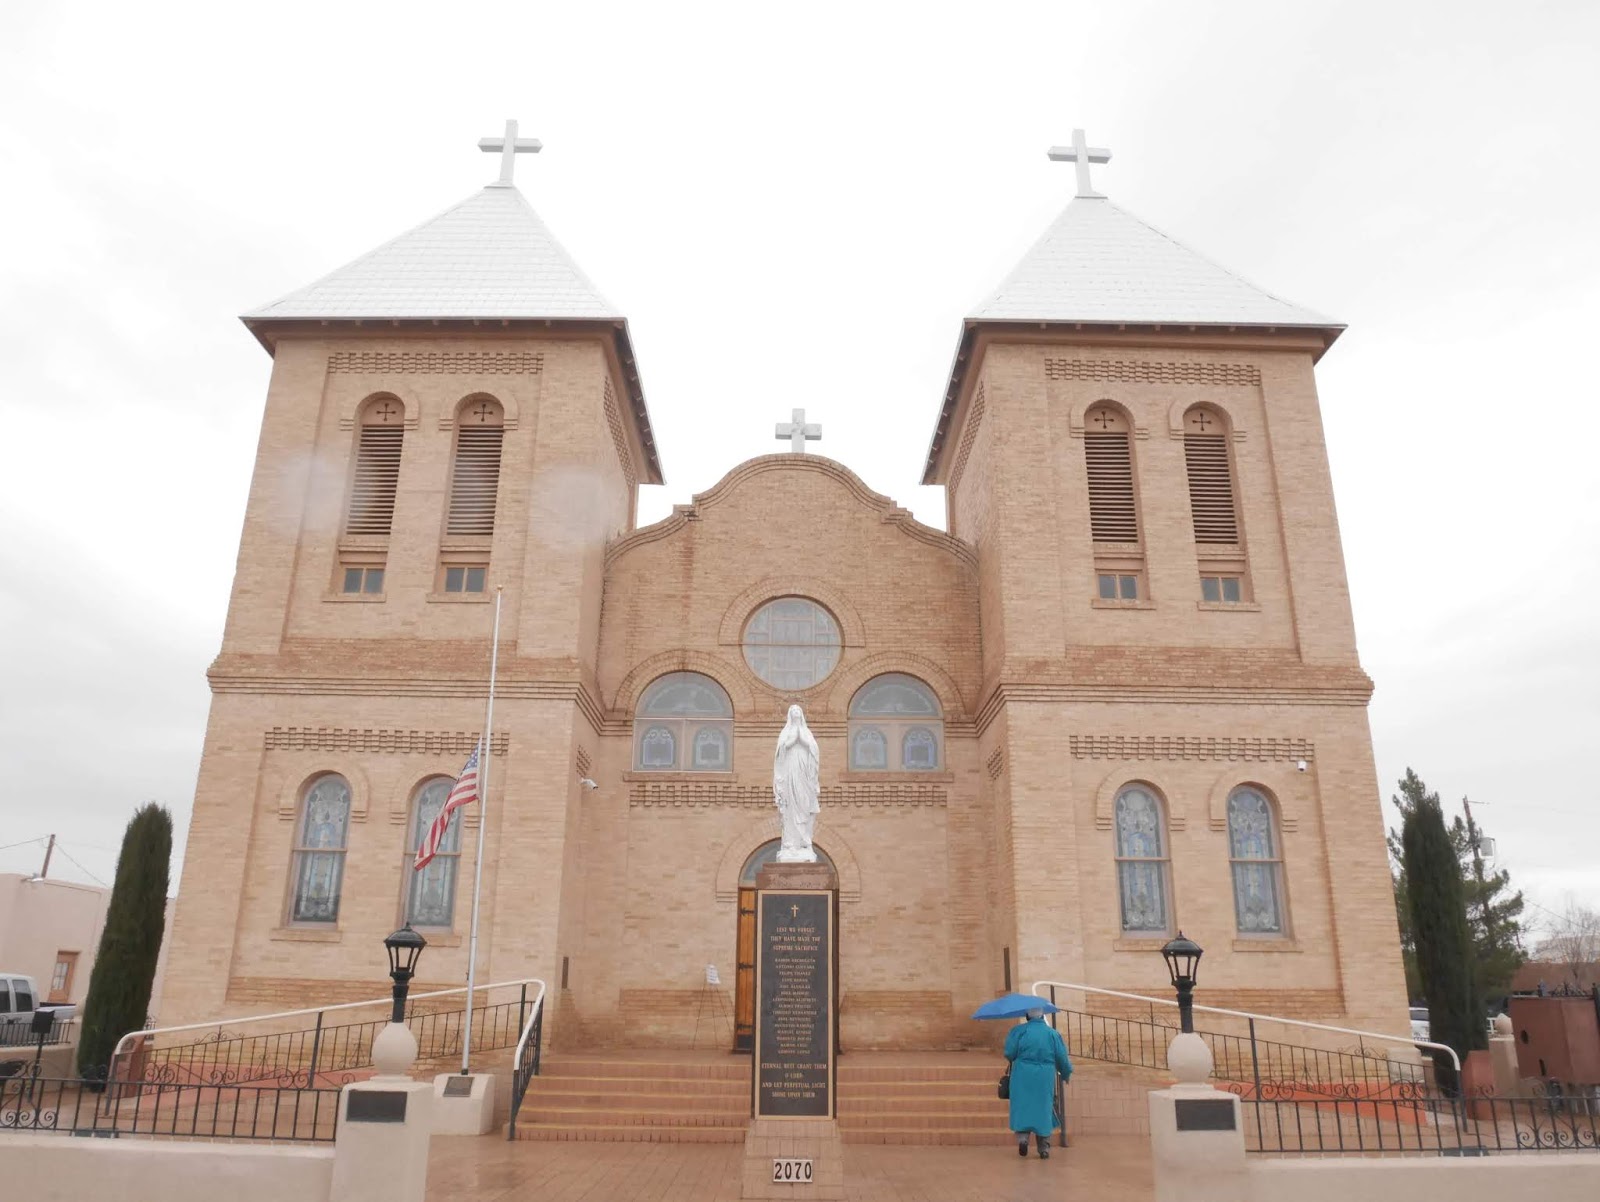 Basilica De San Albino, Mesilla Old Town (Las Cruces), New Mexico